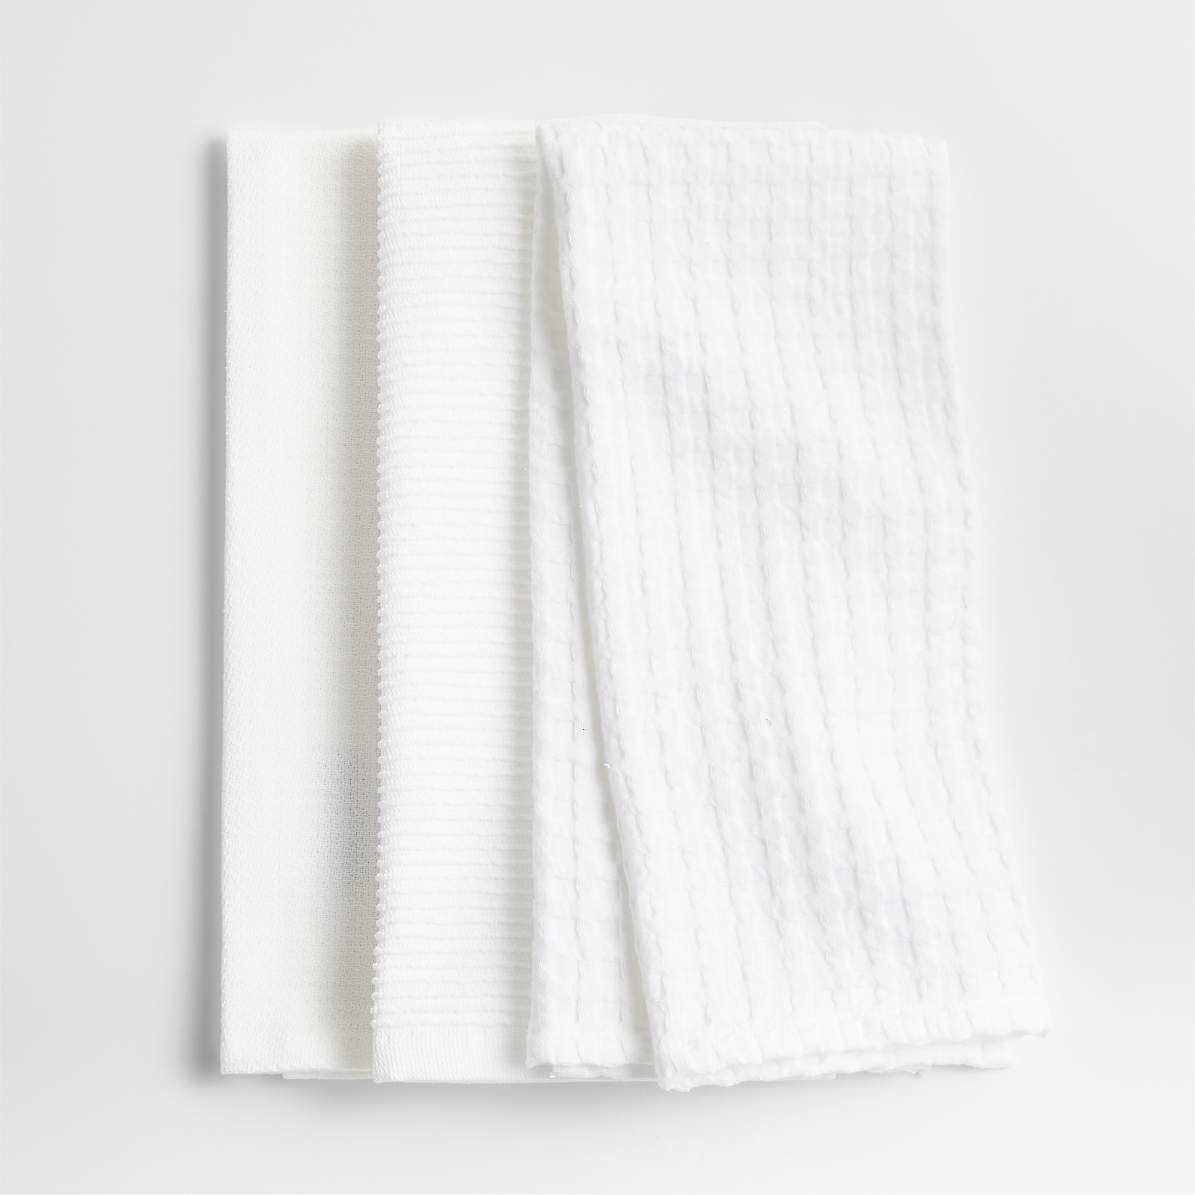 Quinn Dish Towels, Set of 3